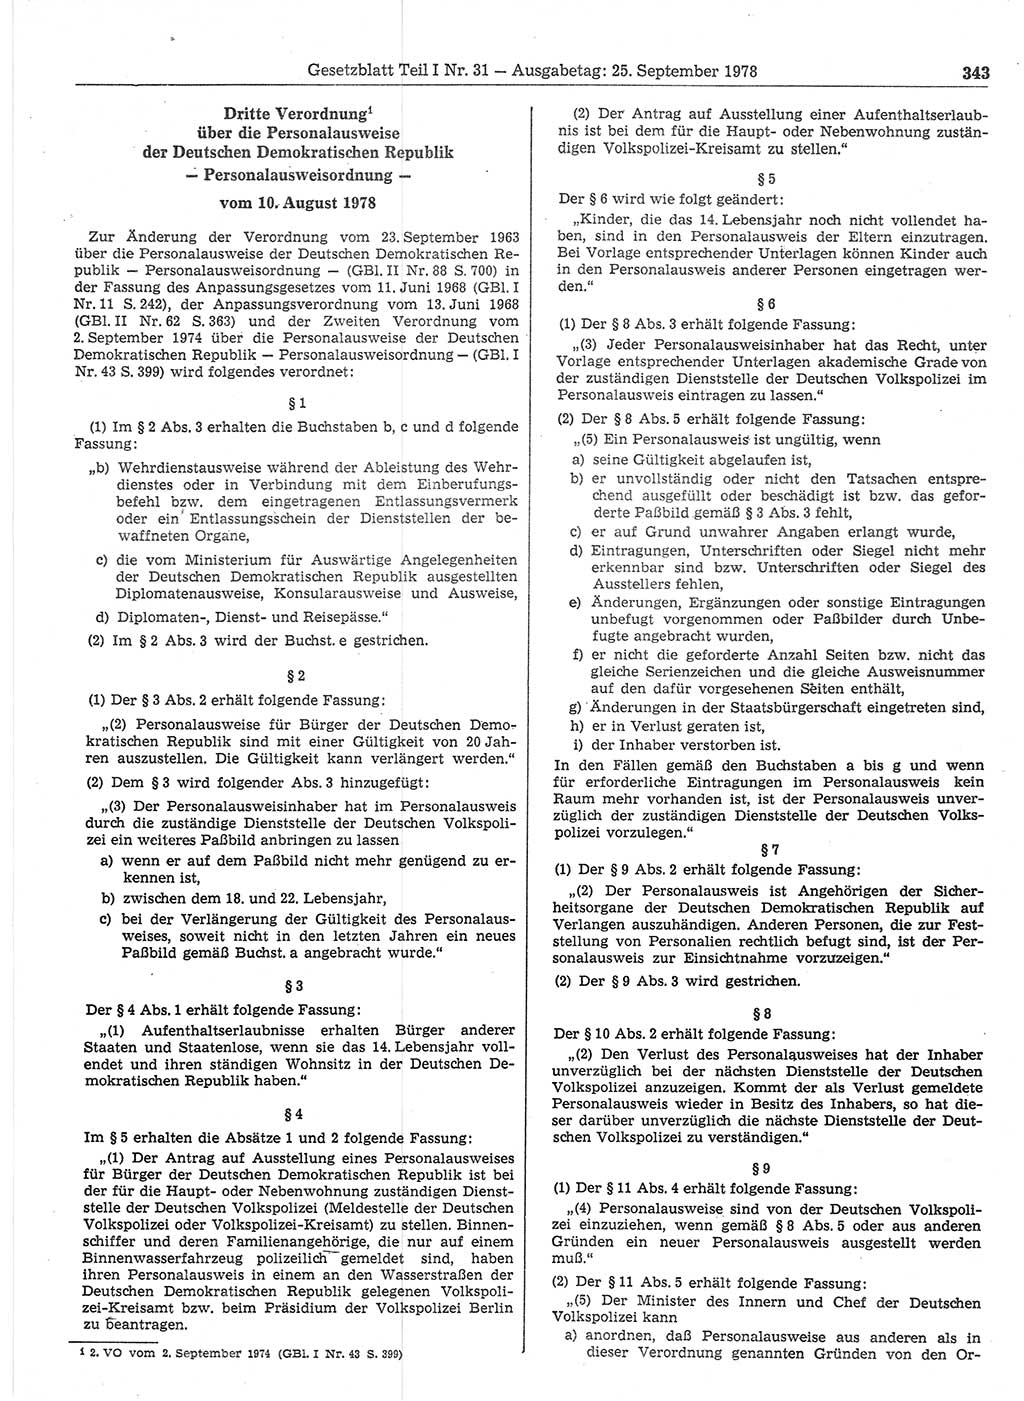 Gesetzblatt (GBl.) der Deutschen Demokratischen Republik (DDR) Teil Ⅰ 1978, Seite 343 (GBl. DDR Ⅰ 1978, S. 343)